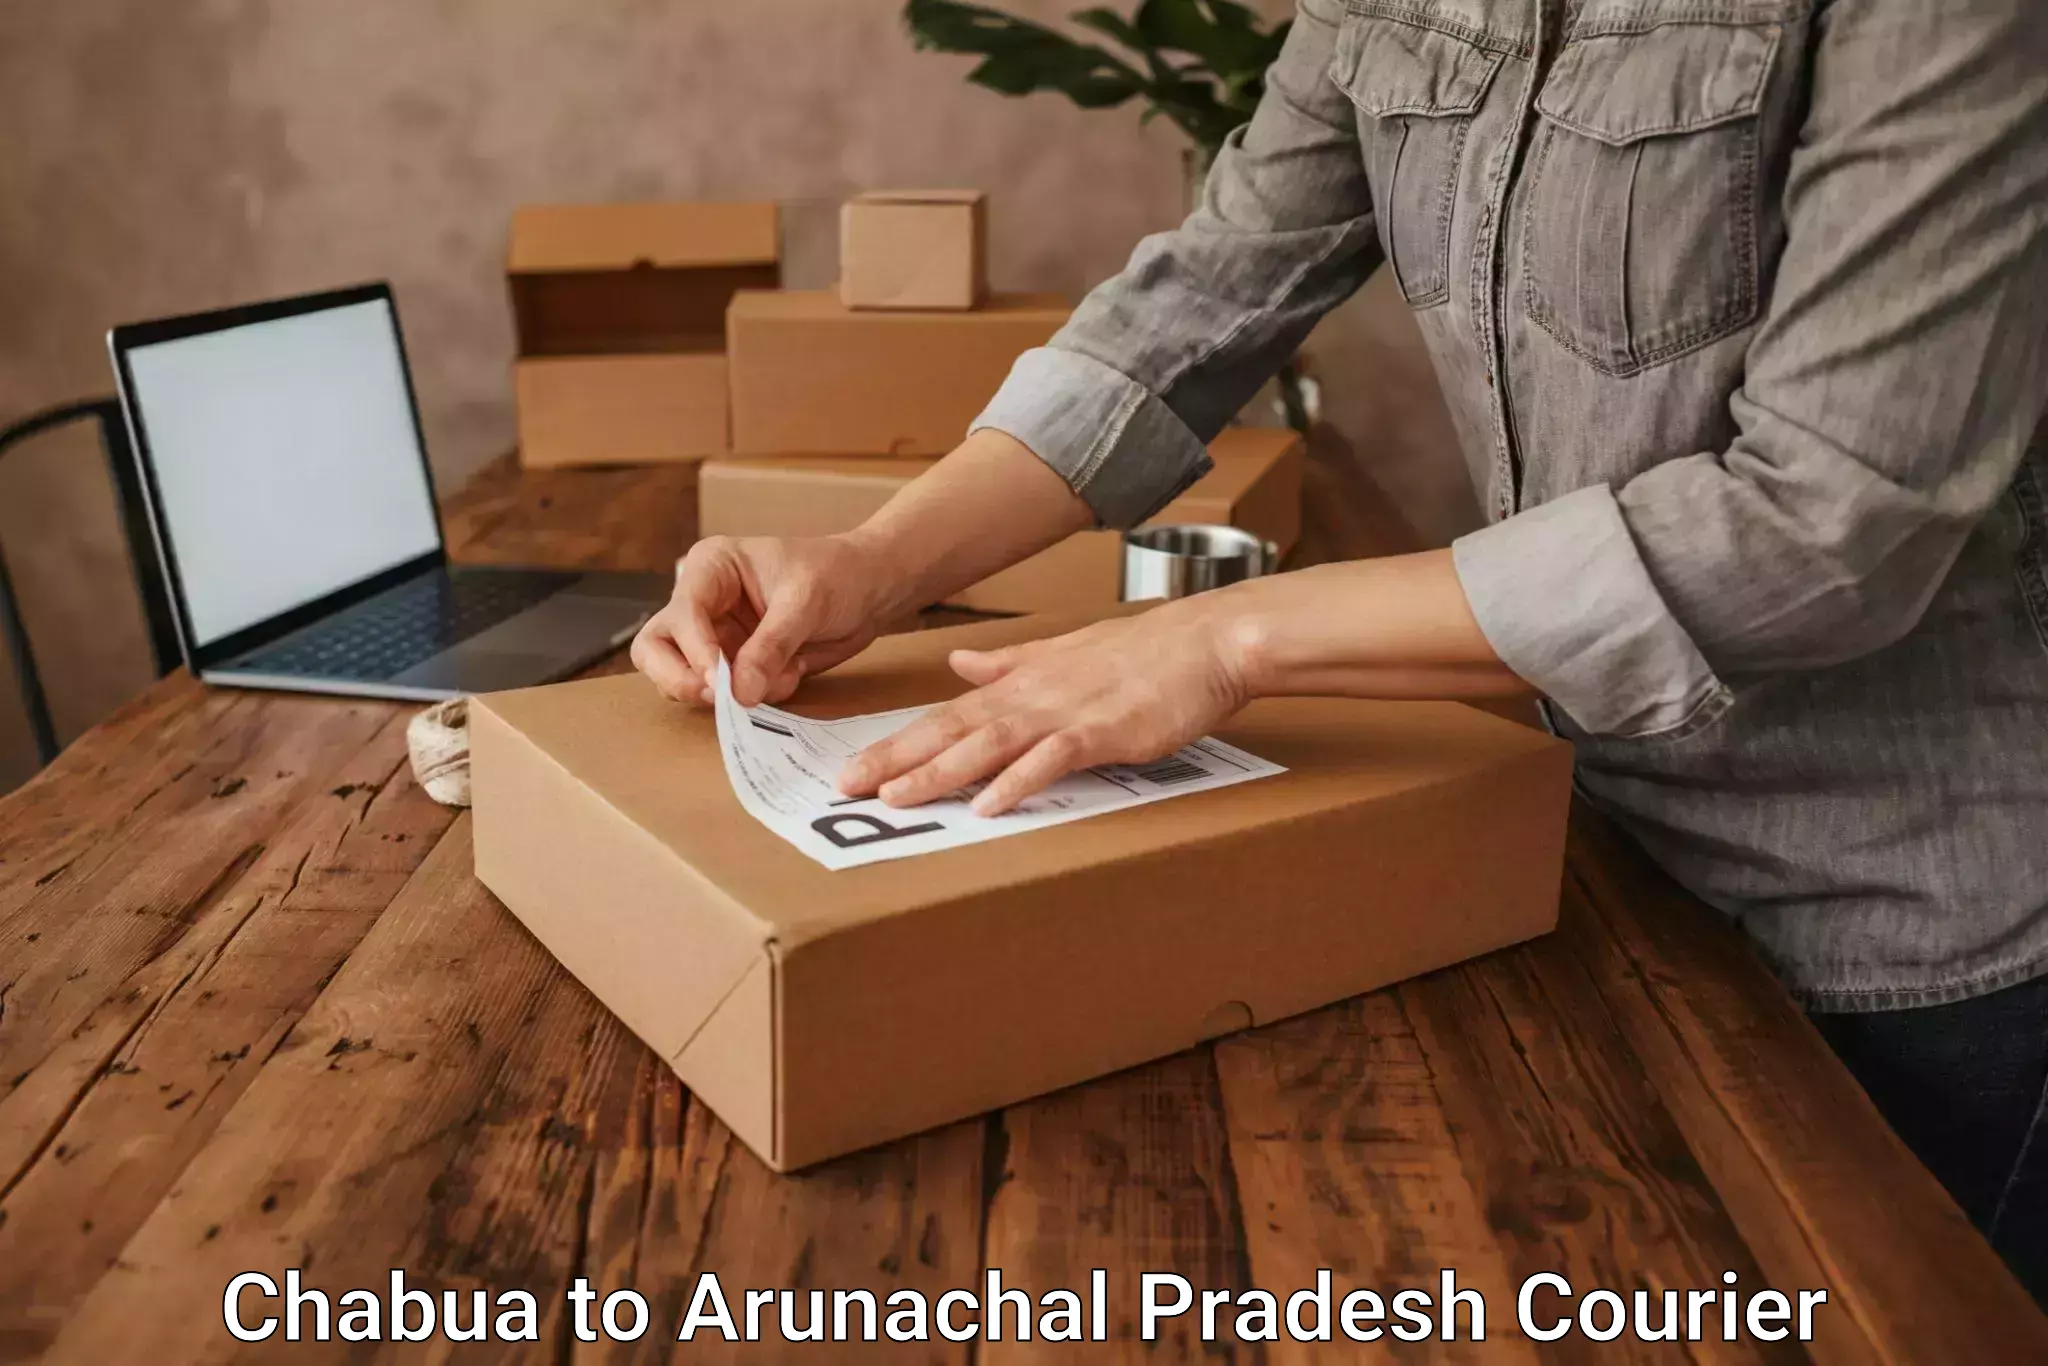 Courier service comparison Chabua to Arunachal Pradesh